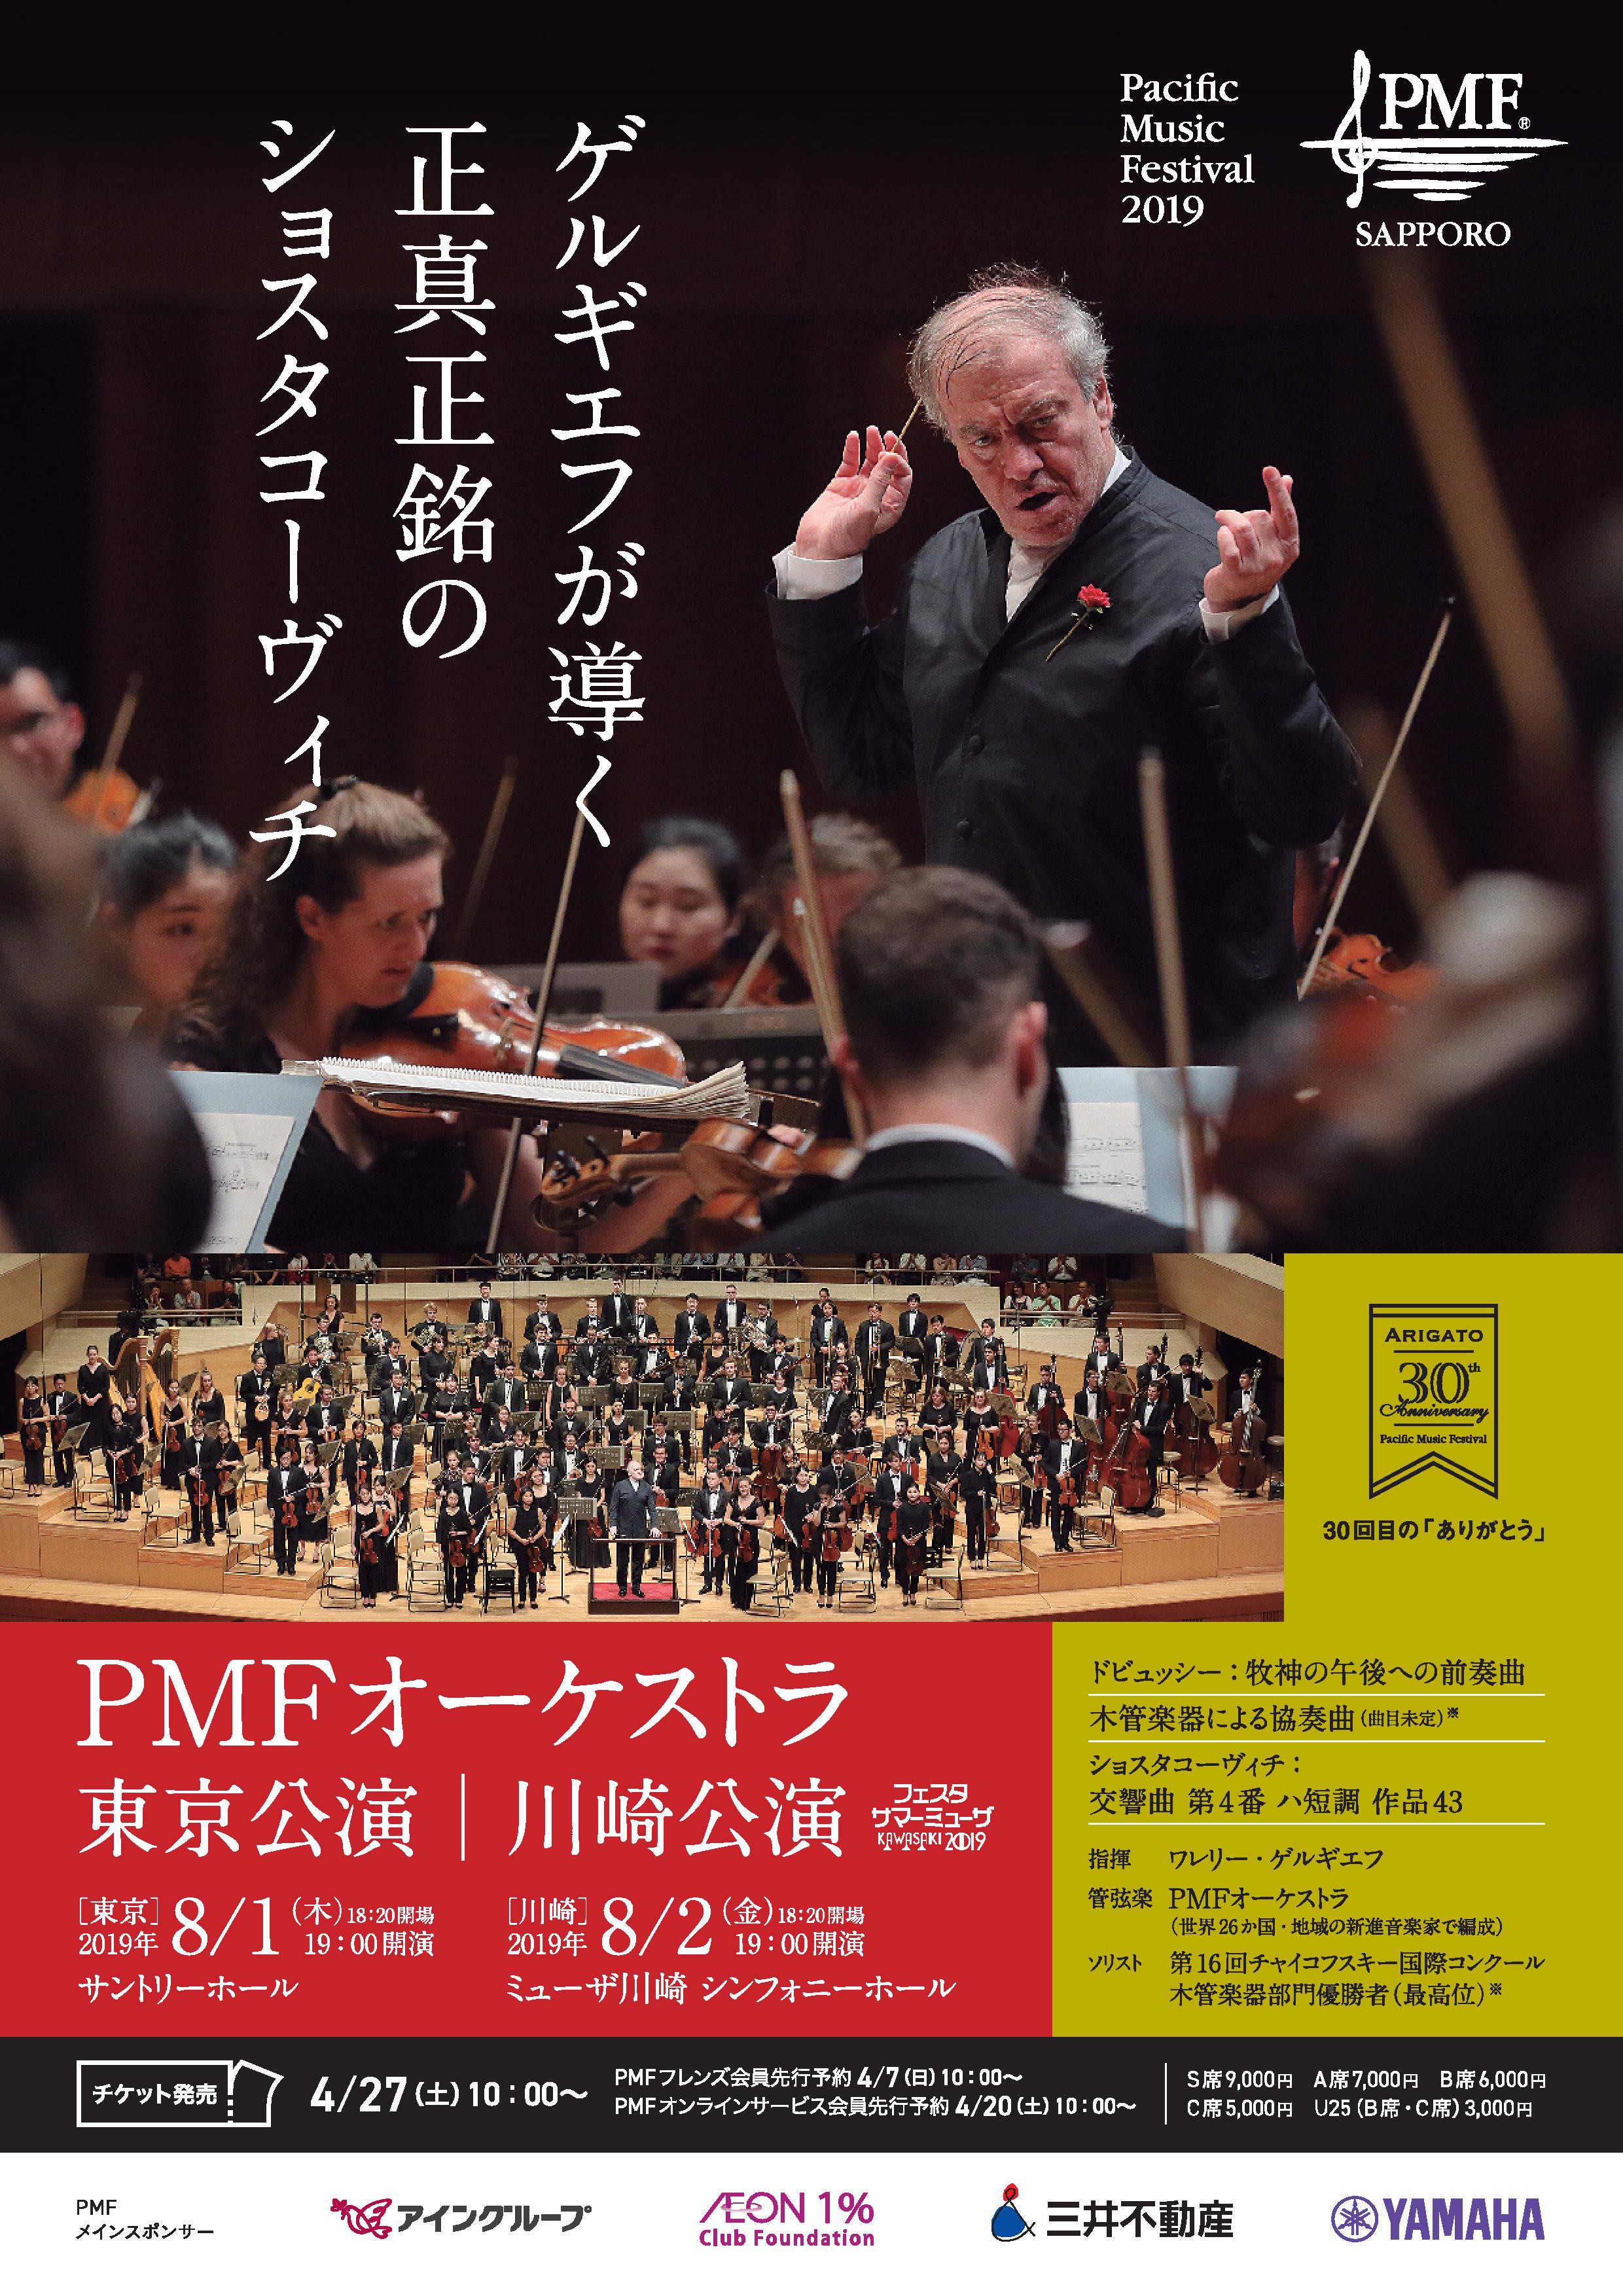 PMF Orchestra Concert in Tokyo & Kawasaki *Japanese (1)